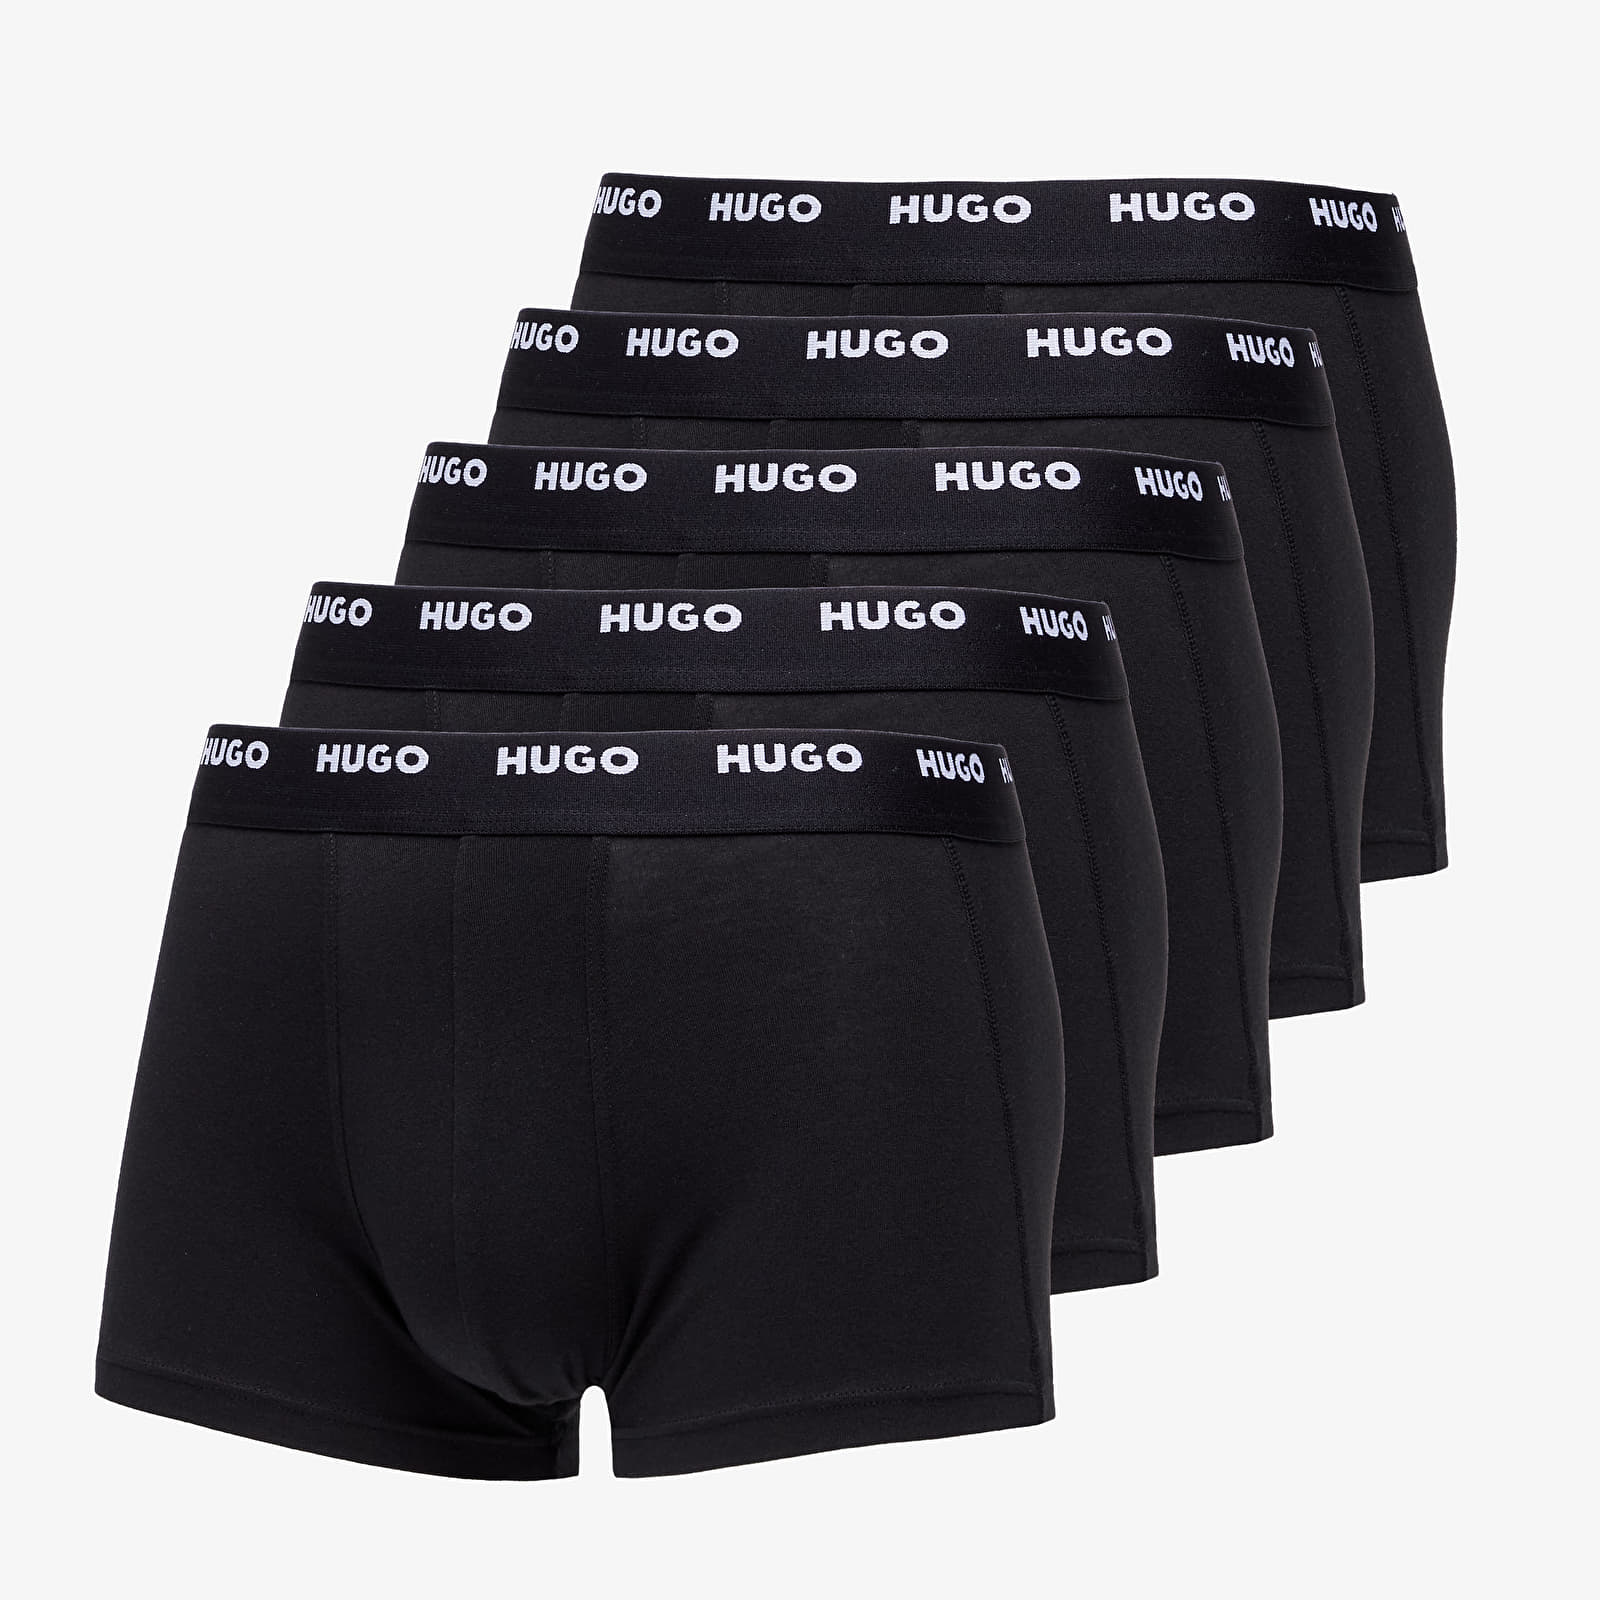 Boxer shorts Hugo Boss Boxer 5 Pack Black